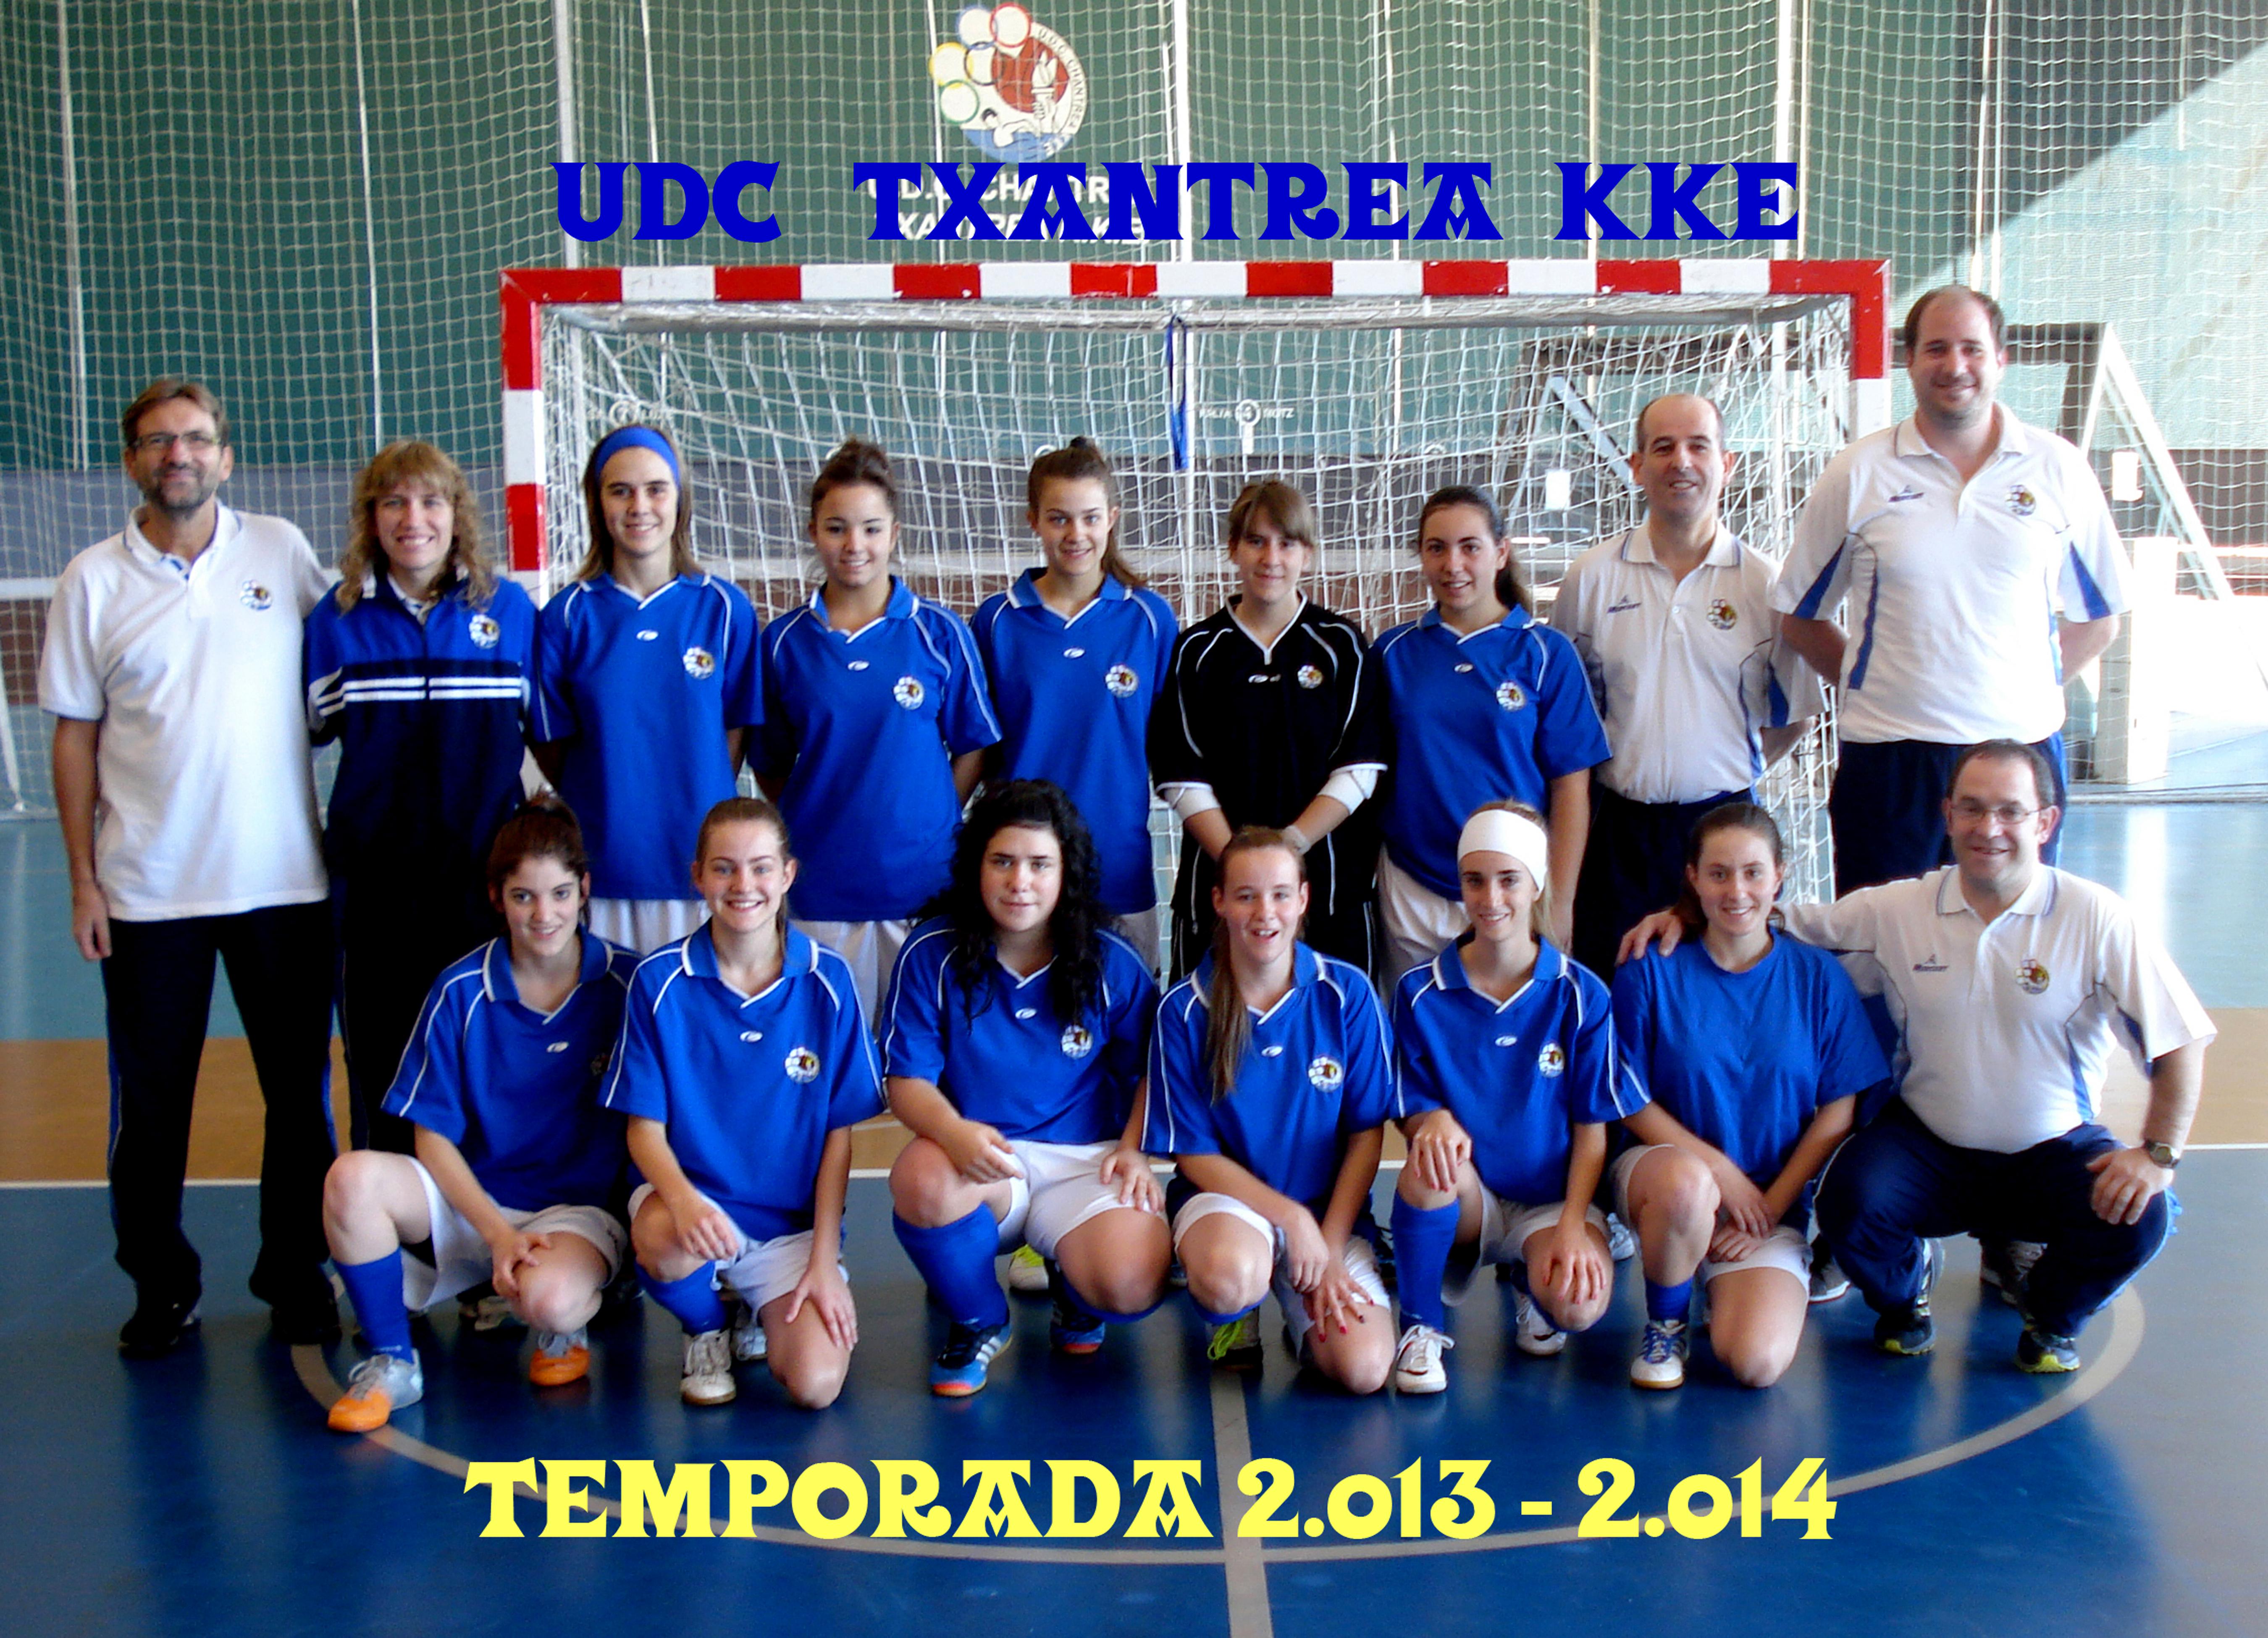 TEMPORADA 2013 - 2014 